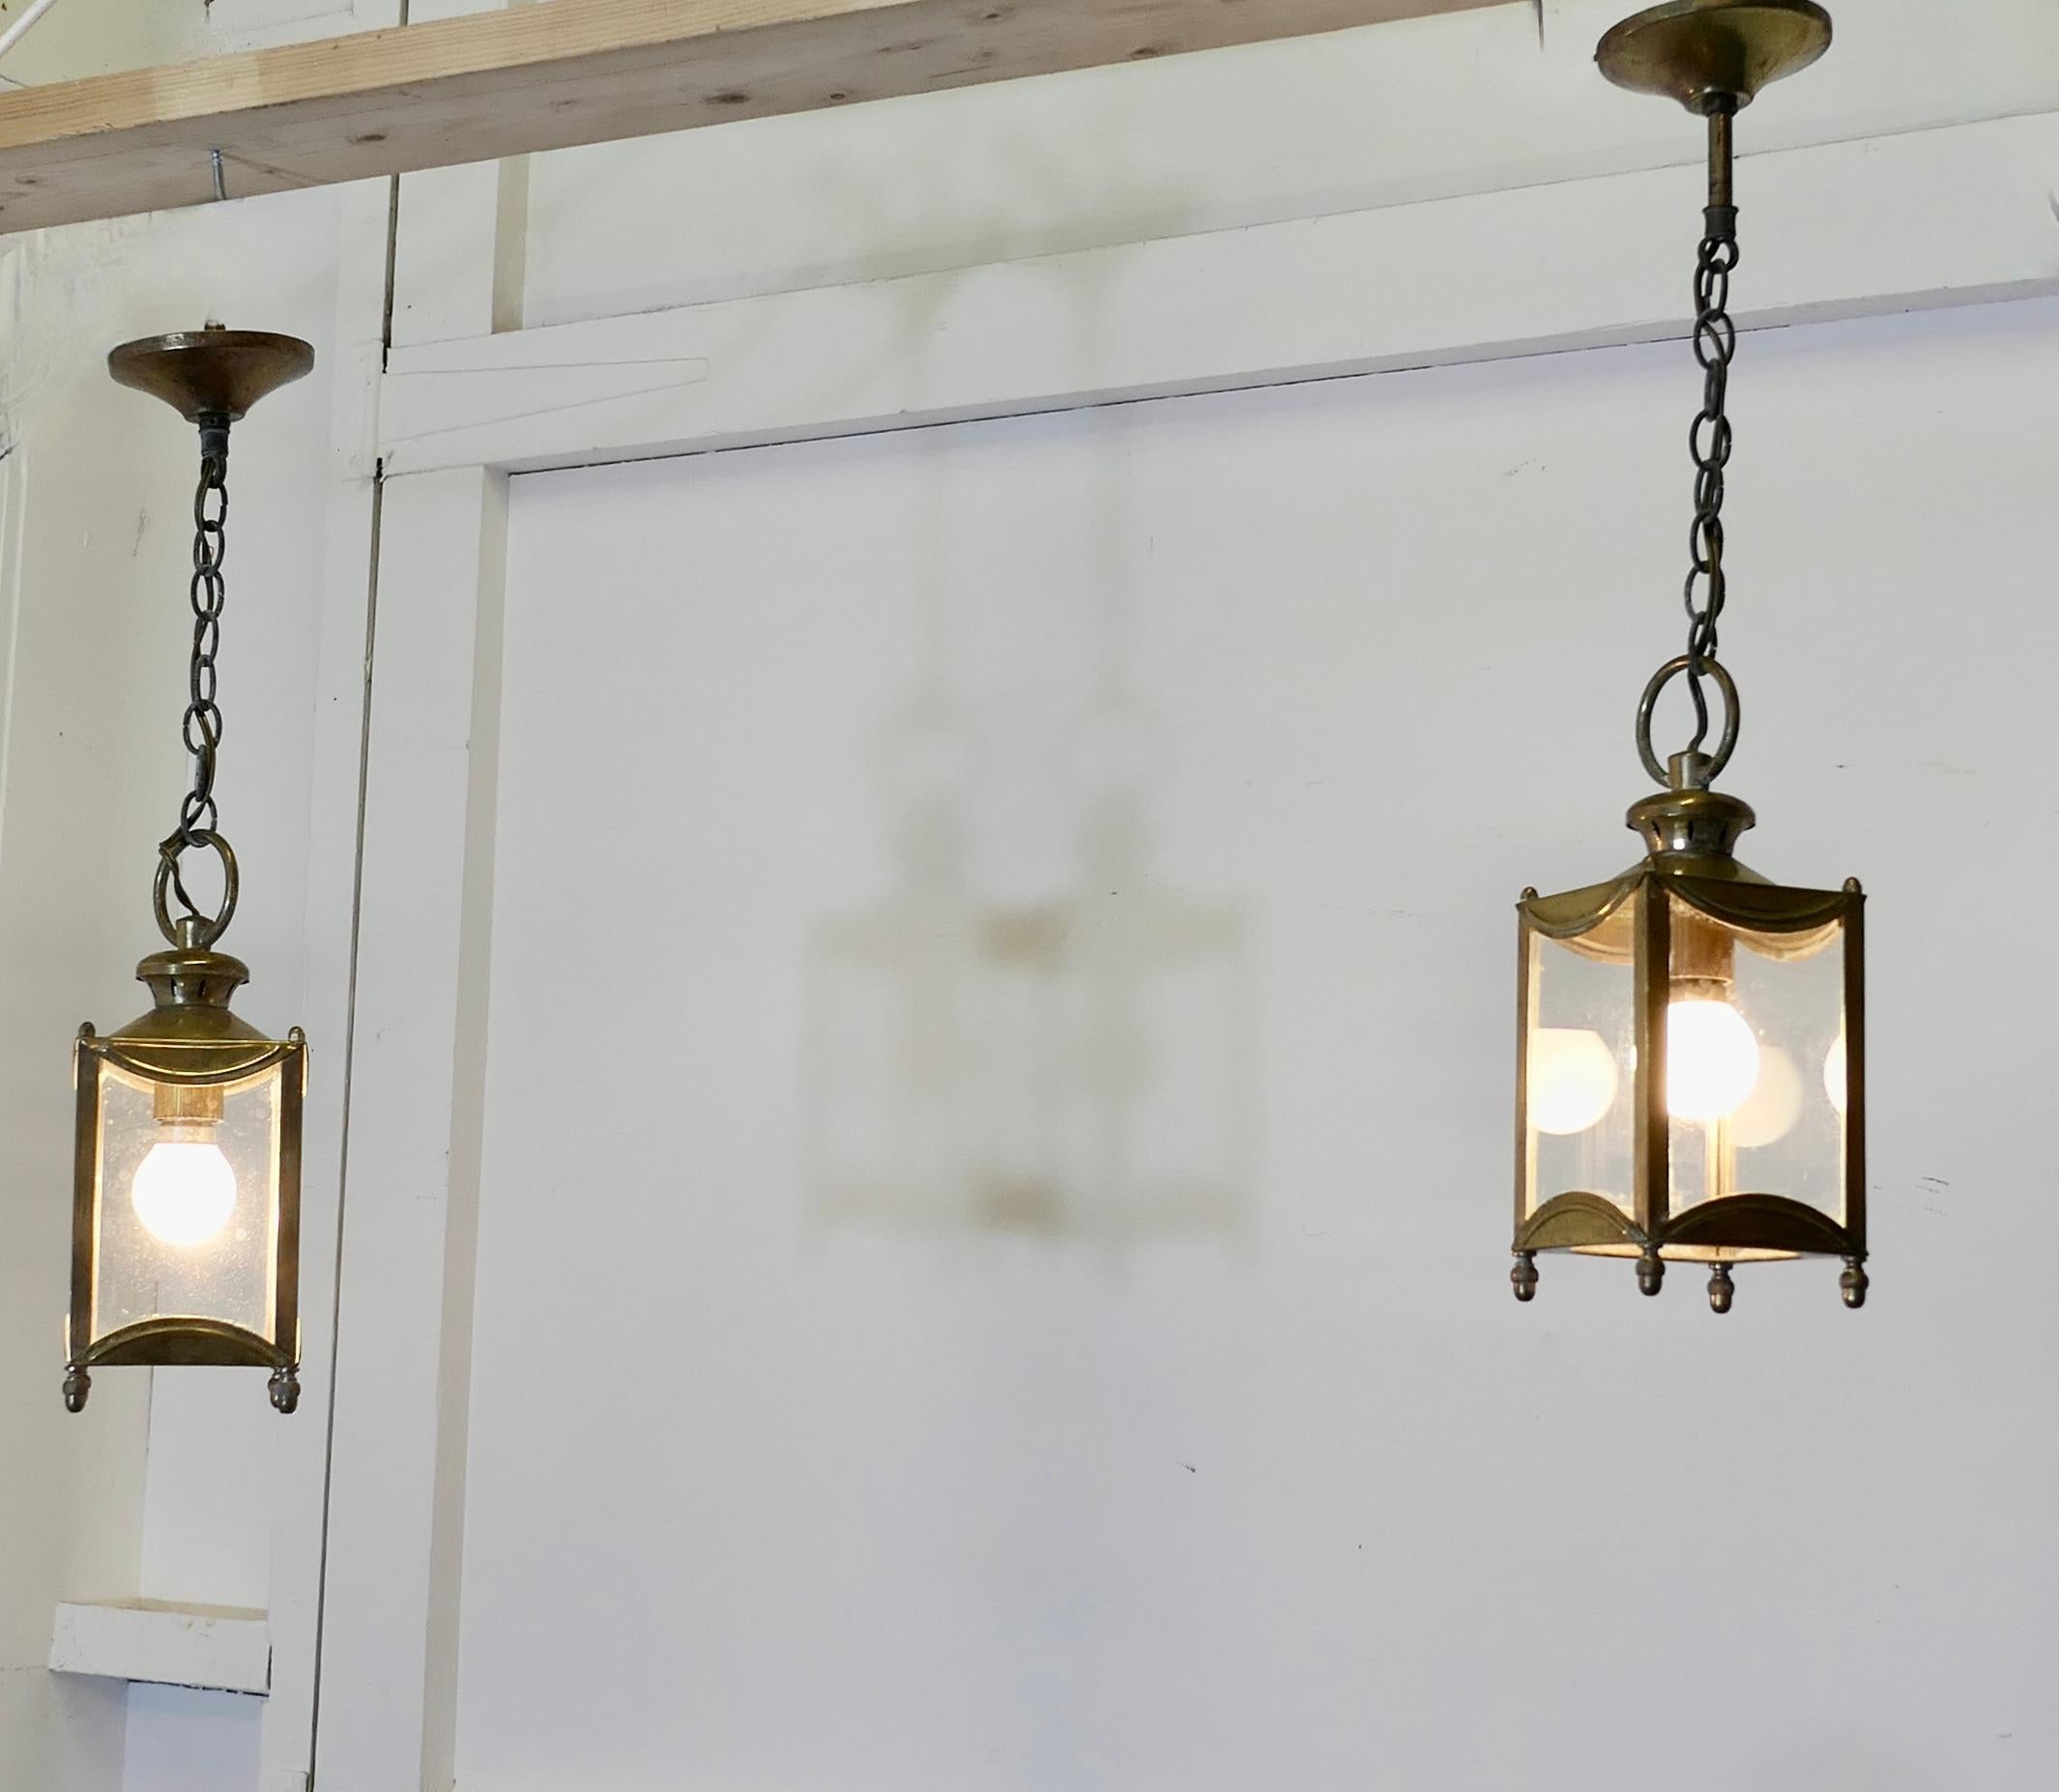 Petite Pair of French Brass and Glass Hall Lantern Lights

Dies ist ein schönes Paar, jede Lampe hat 4 Seiten und eine rechteckige Form, diese sehr attraktive Paar geben ein helles Licht, wenn beleuchtet, die Laterne Rahmen sind Messing und sie